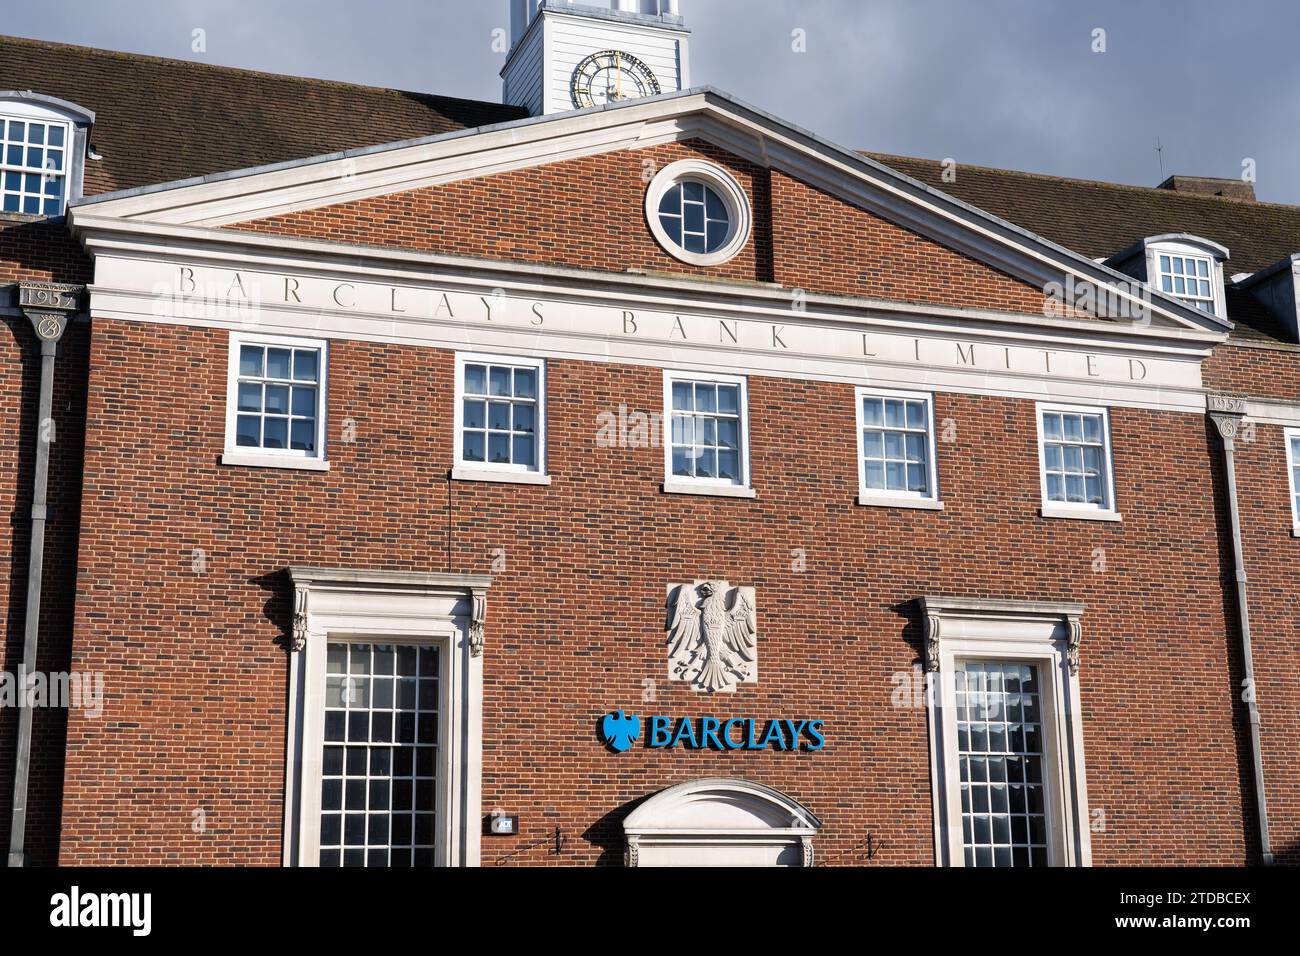 Bâtiment de tour d'horloge de banque Barclays à Winchester - un style architectural géorgien moderne. L'une des quatre grandes banques britanniques Banque D'Images